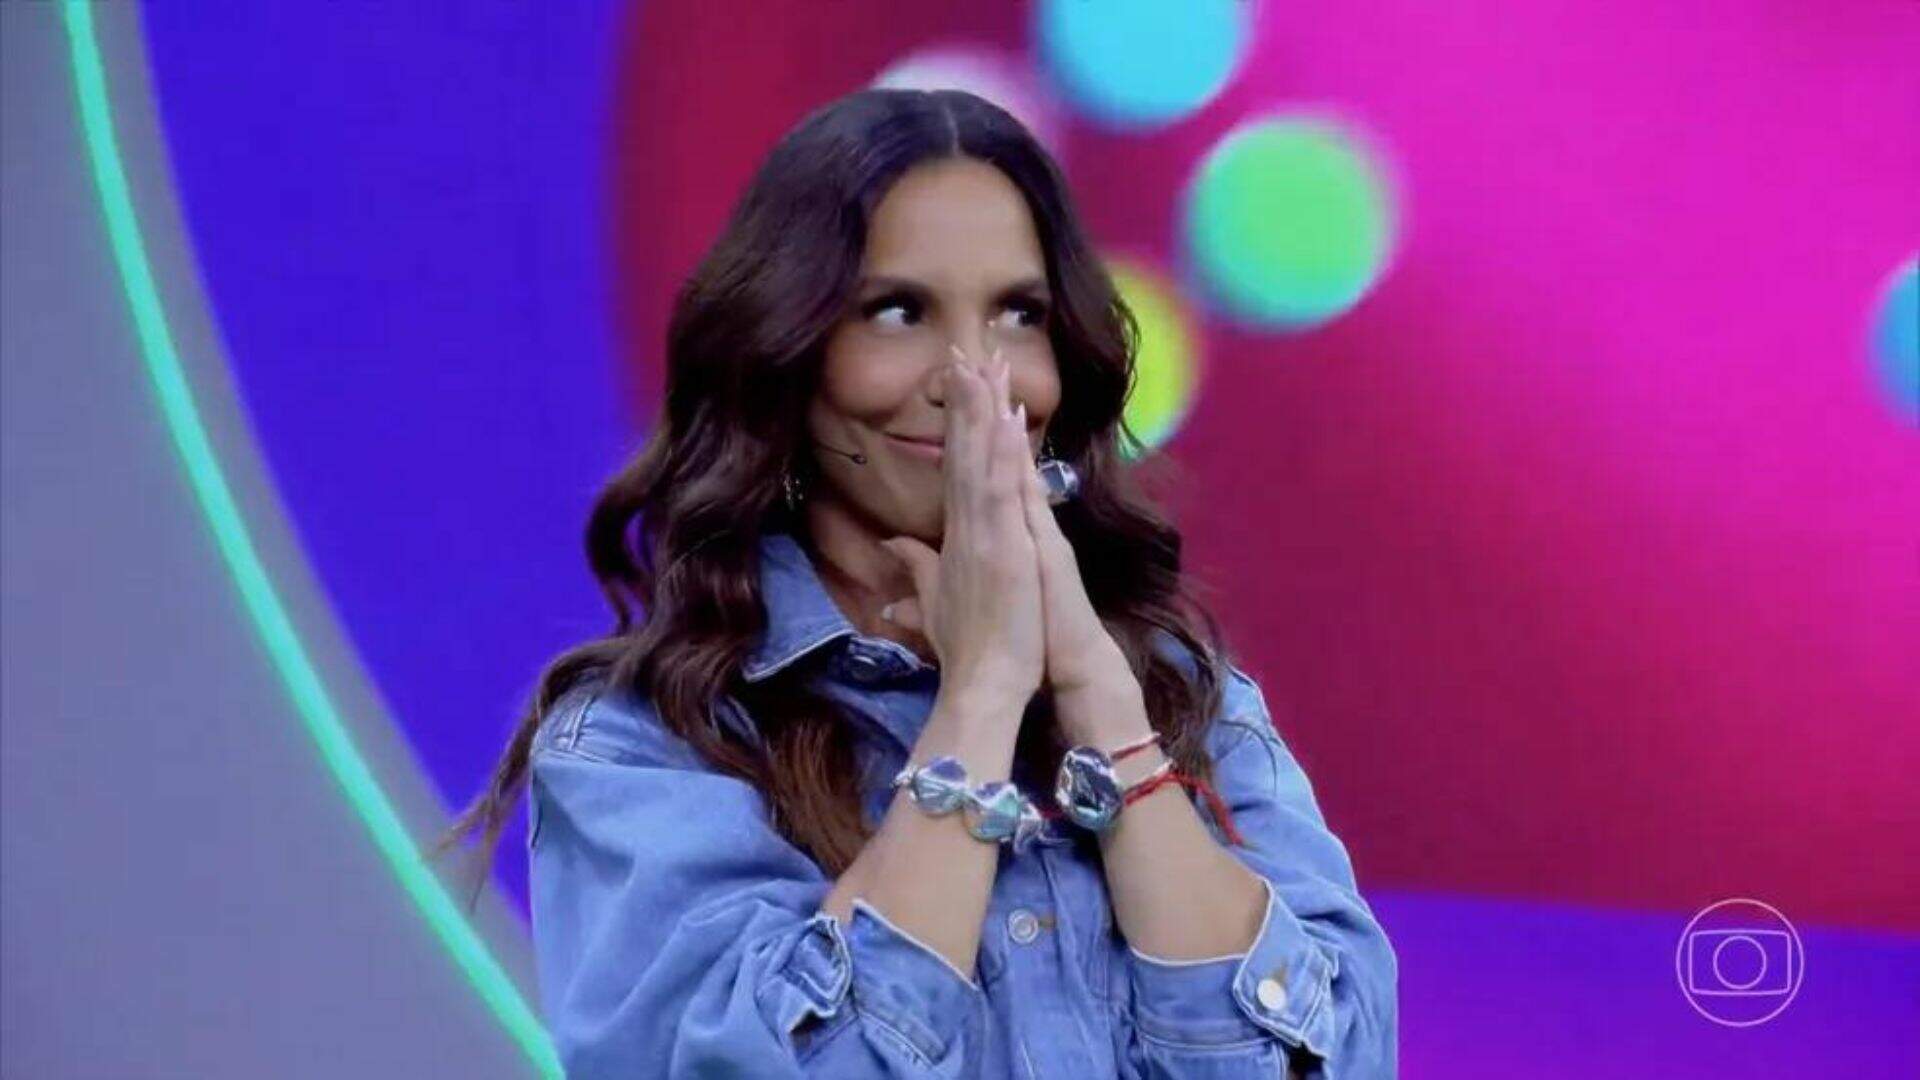 Fracasso! Mesmo com participação de Anitta, estreia da segunda temporada do “Pipoca da Ivete” fica com baixa audiência - Metropolitana FM